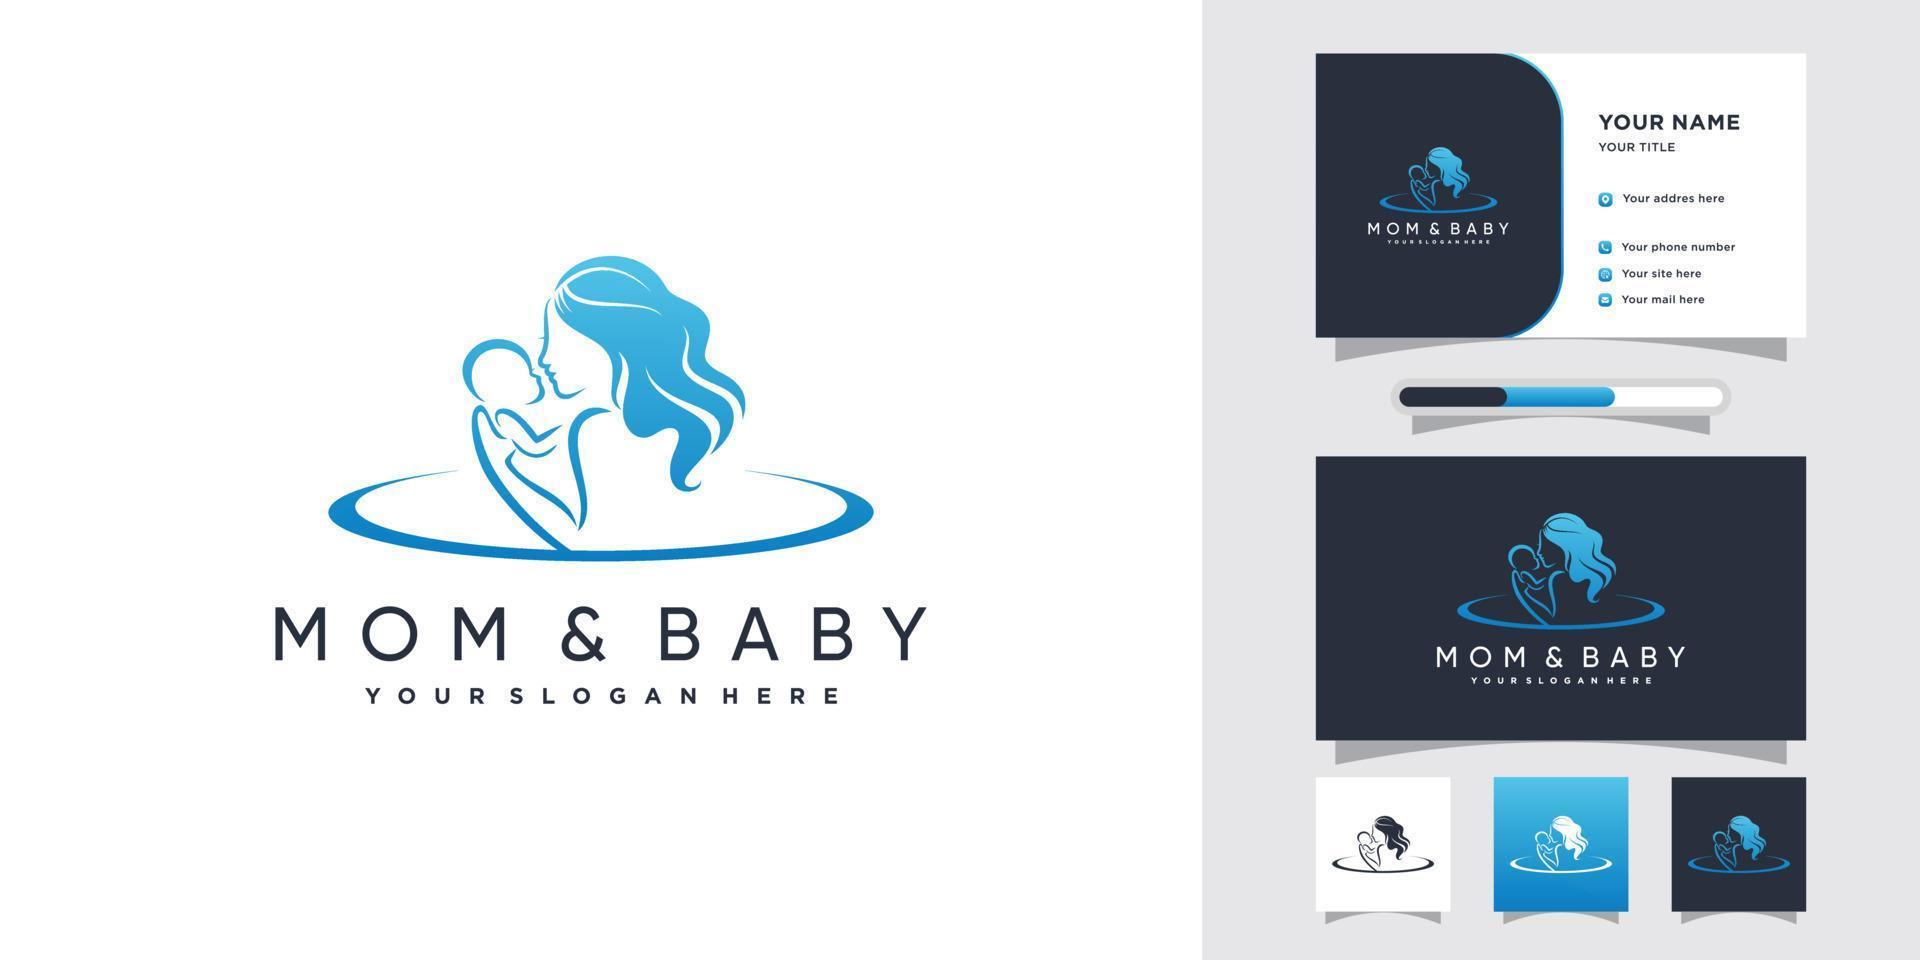 Mama und Baby-Logo-Design mit kreativem Konzept und Visitenkartenvorlage Premium-Vektor vektor